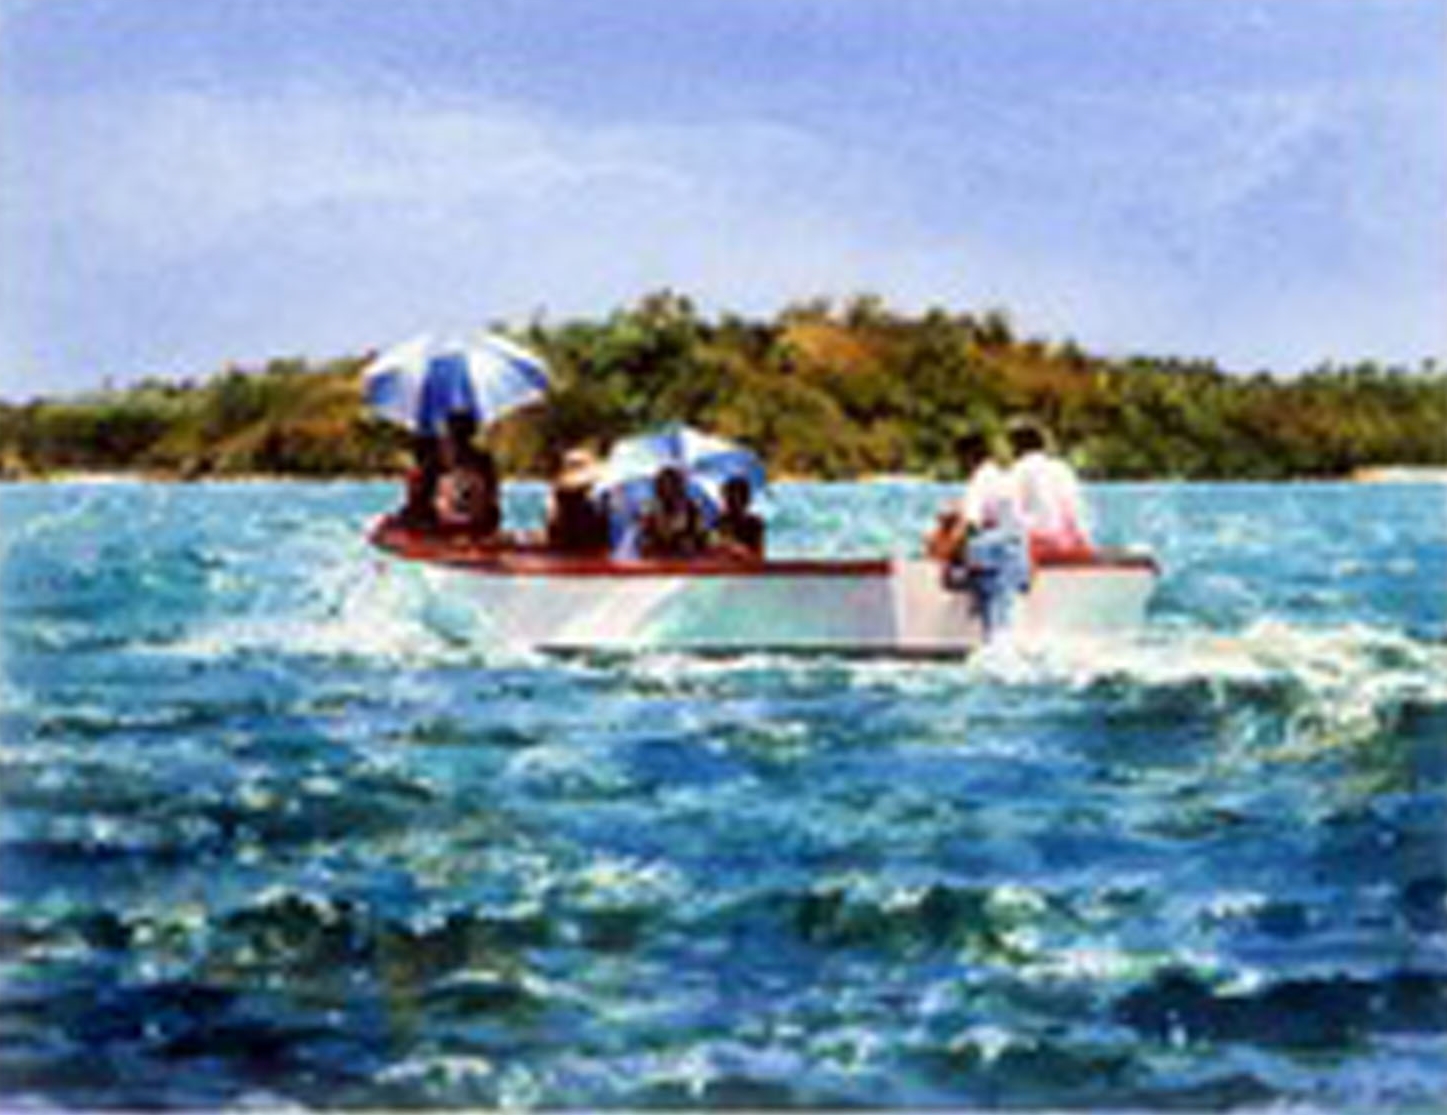 "Sun umbrellas on Blue Lagoon"